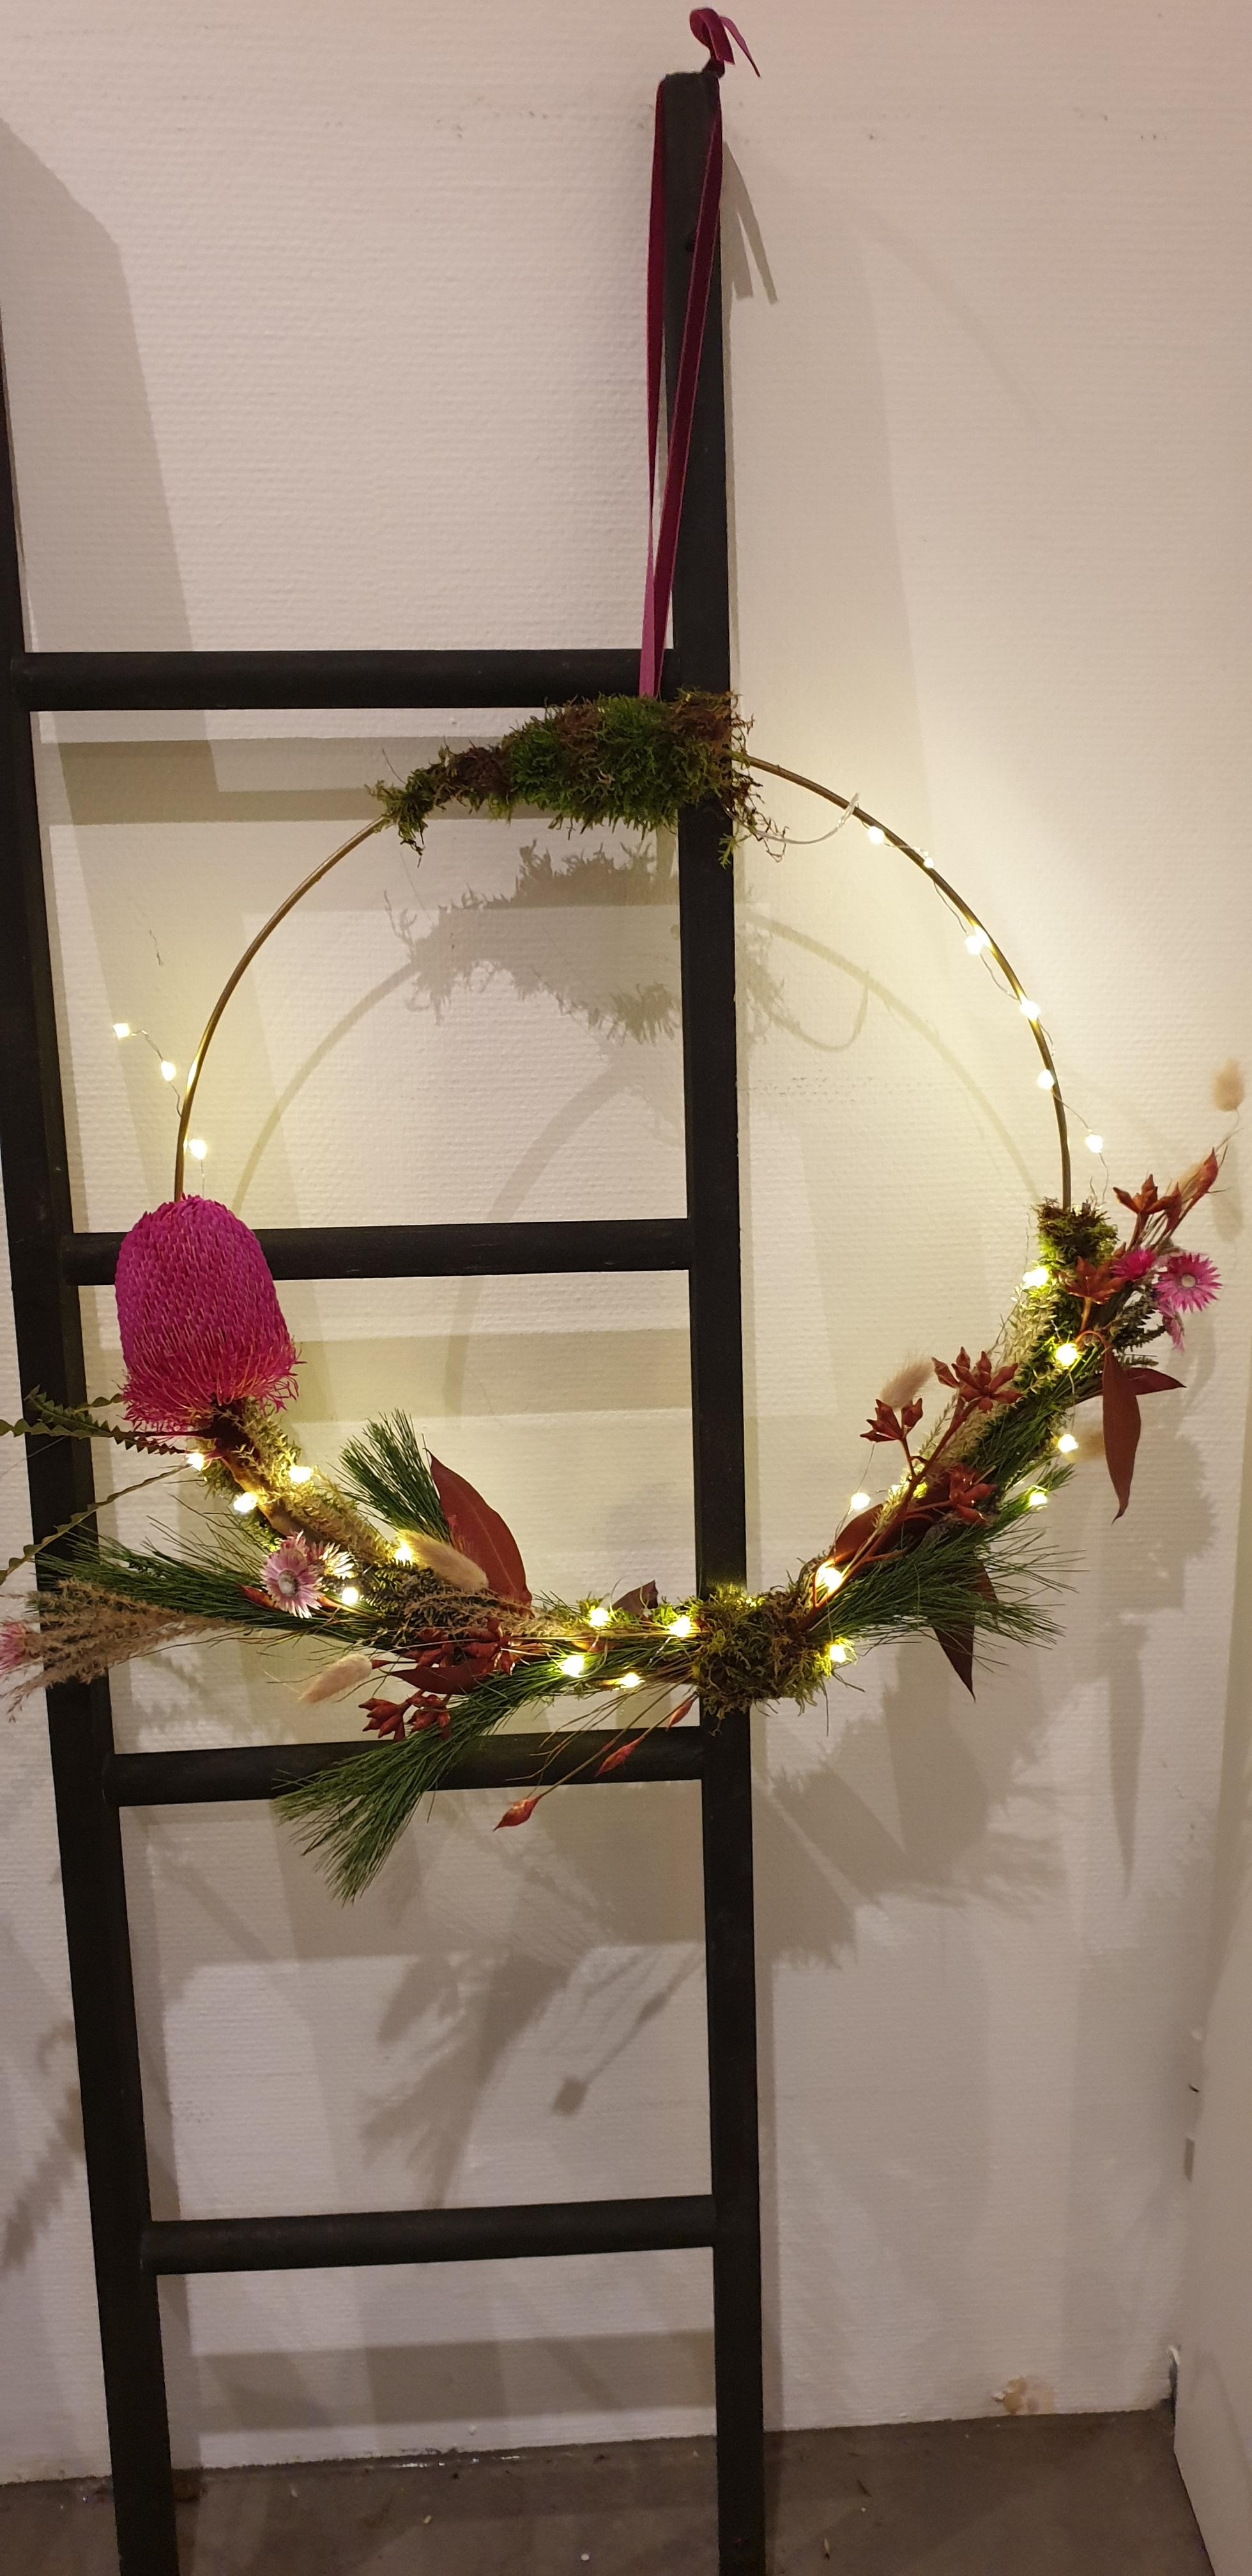 Meine Weihnachtsdekoration
#weihnachten mit Trockenblumen #weihnachtenistrund #skandi